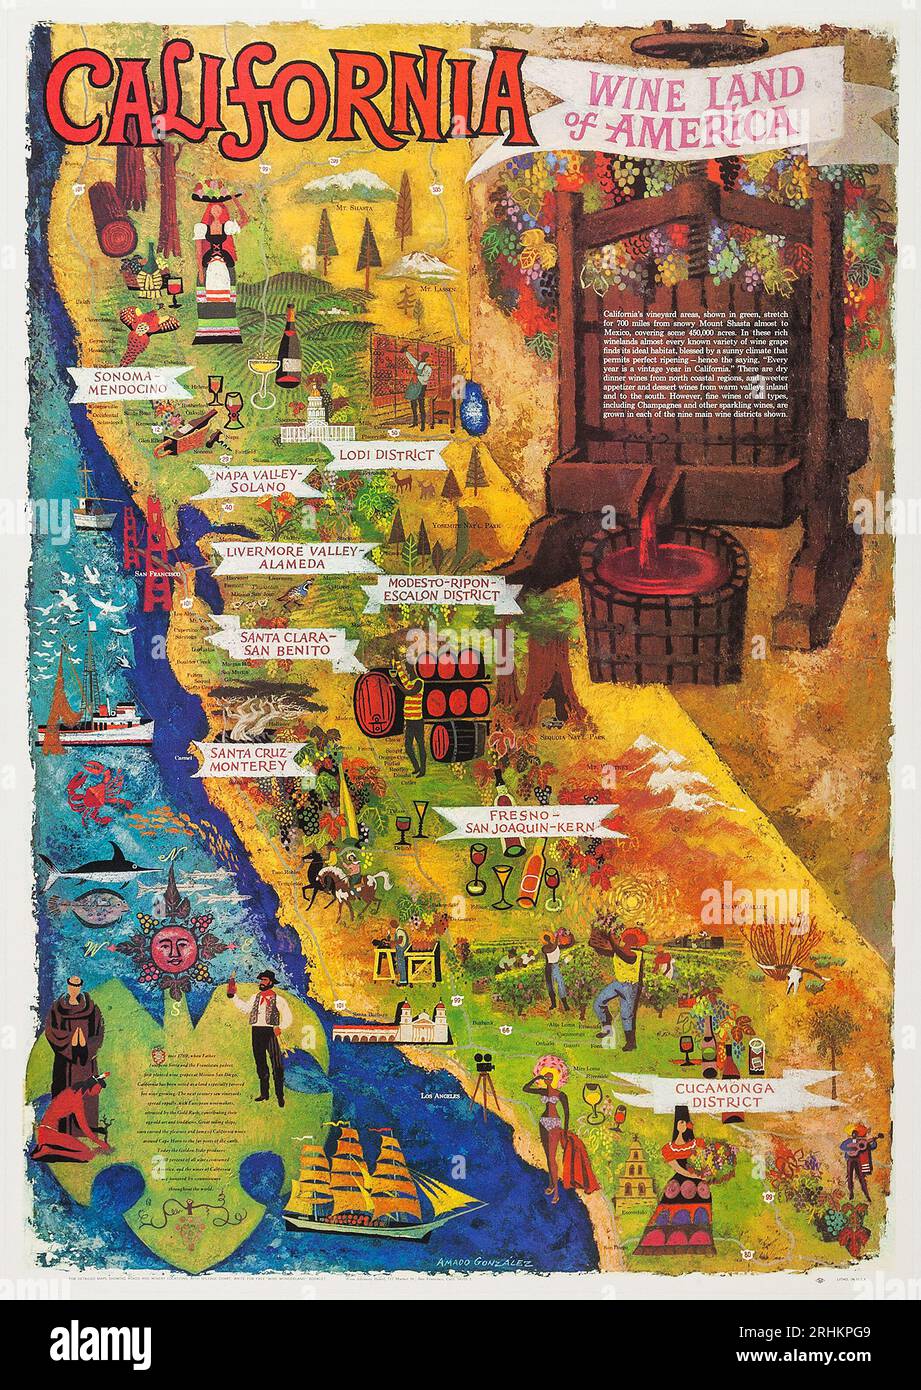 Californie - Wine Land of America (Conseil consultatif du vin, années 1960). Tourisme - affiche de voyage Banque D'Images